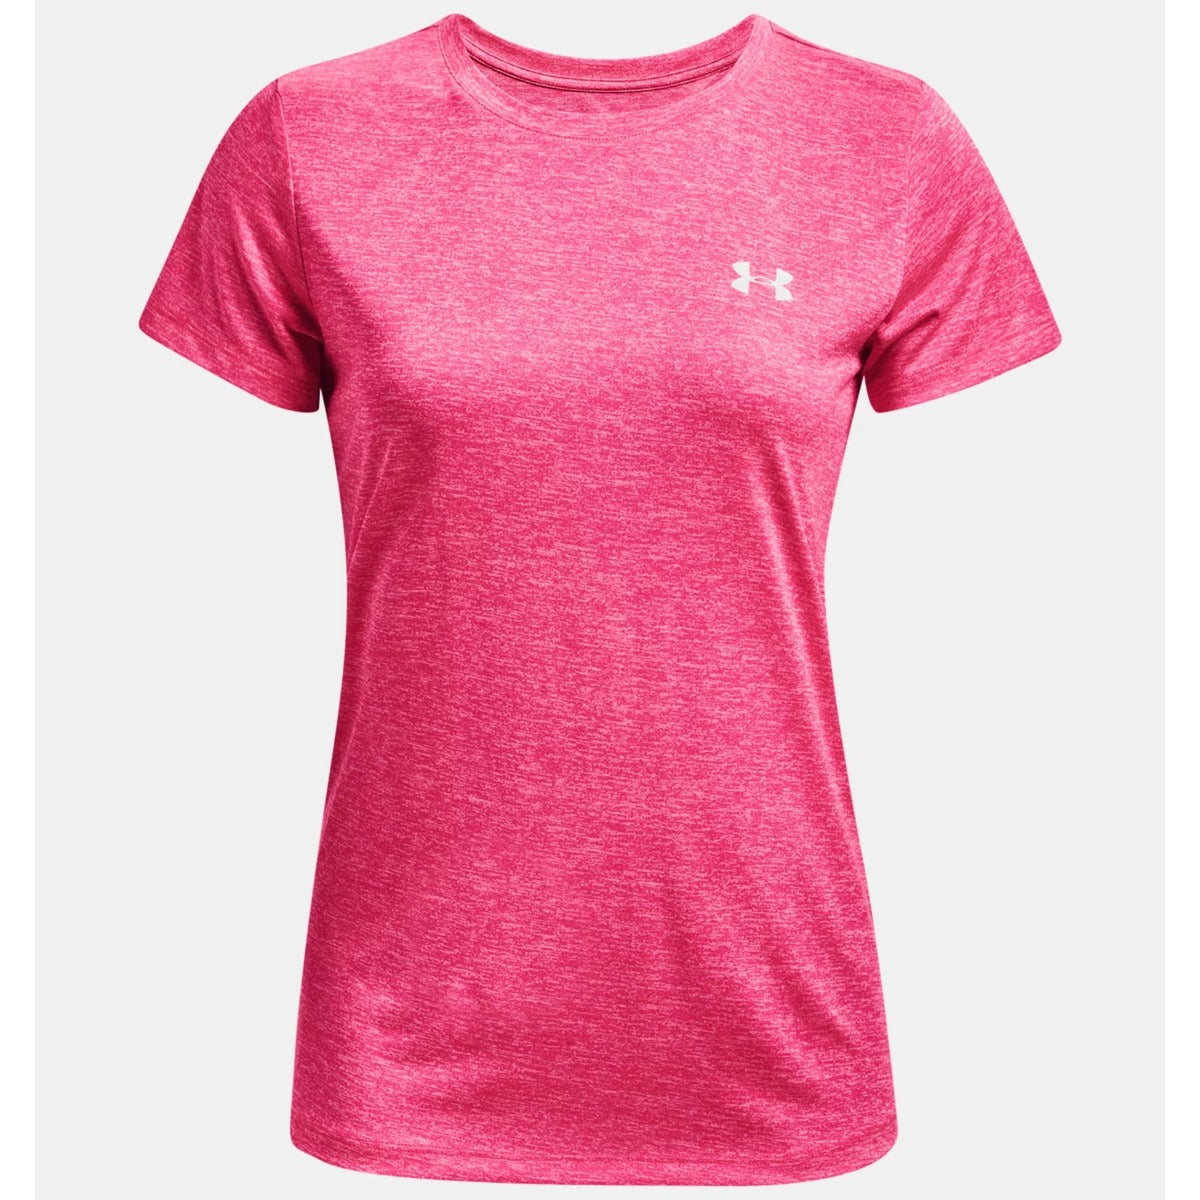 Under Armour Tech Twist T-shirt Womens (Pink 695)